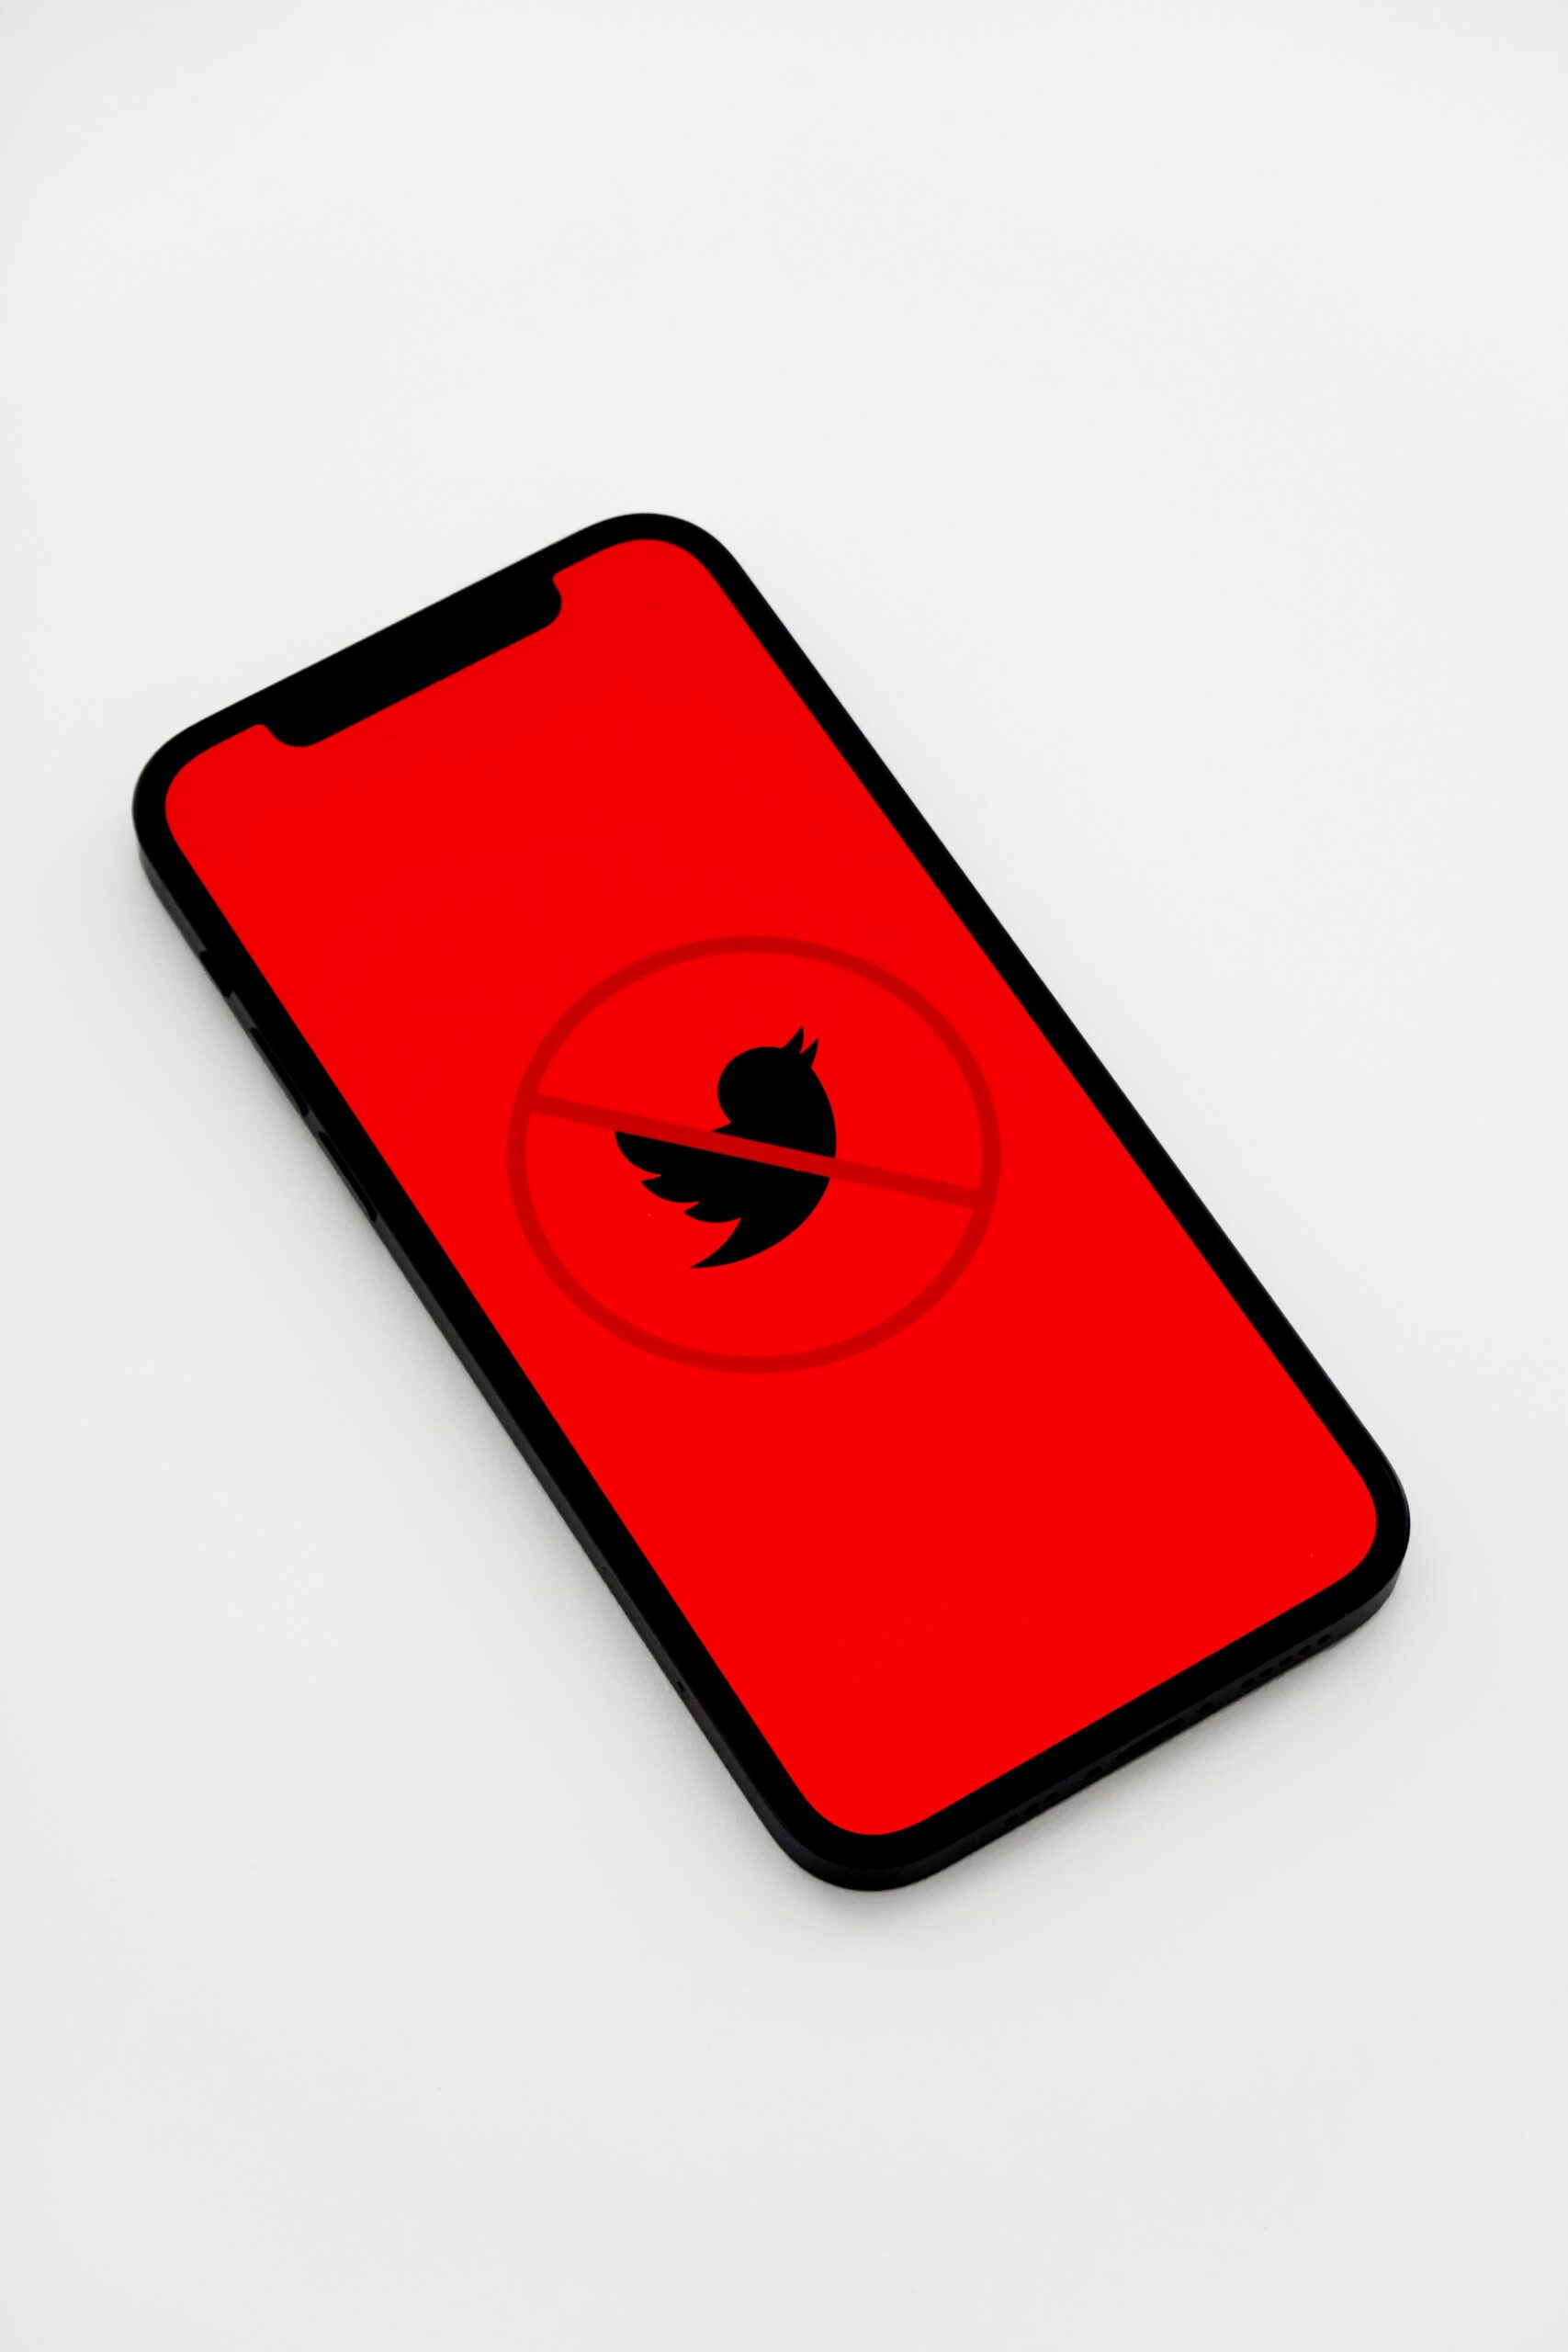 Visuel liée hors social media présenter par le logo Twitter en rouge et barrée